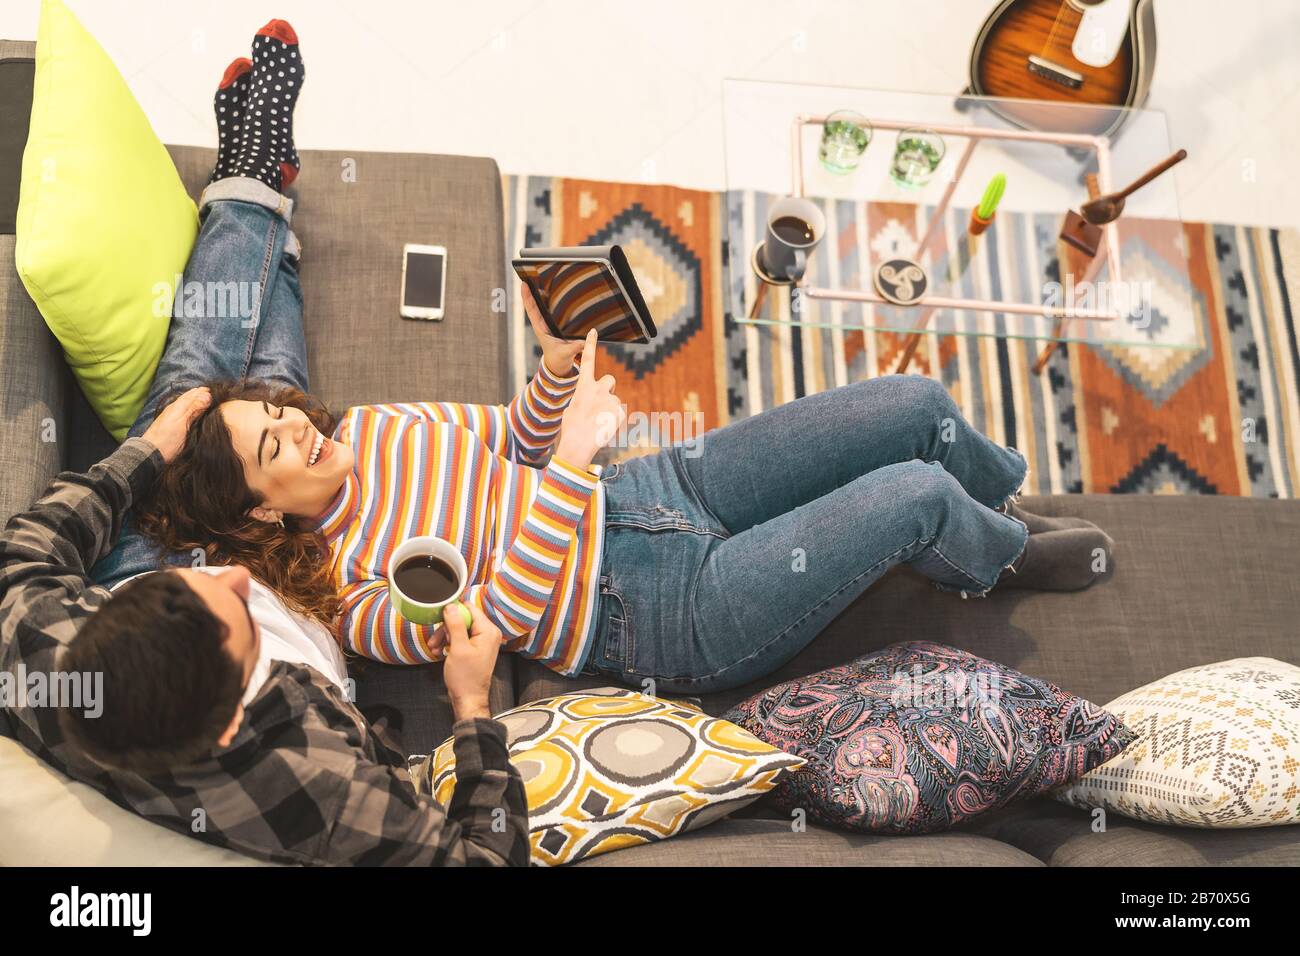 Glückliches Paar, das sich zu Hause auf dem Sofa entspannen kann - junge romantische Liebhaber haben Spaß mit neuen Technologiegeräten für Trends Stockfoto